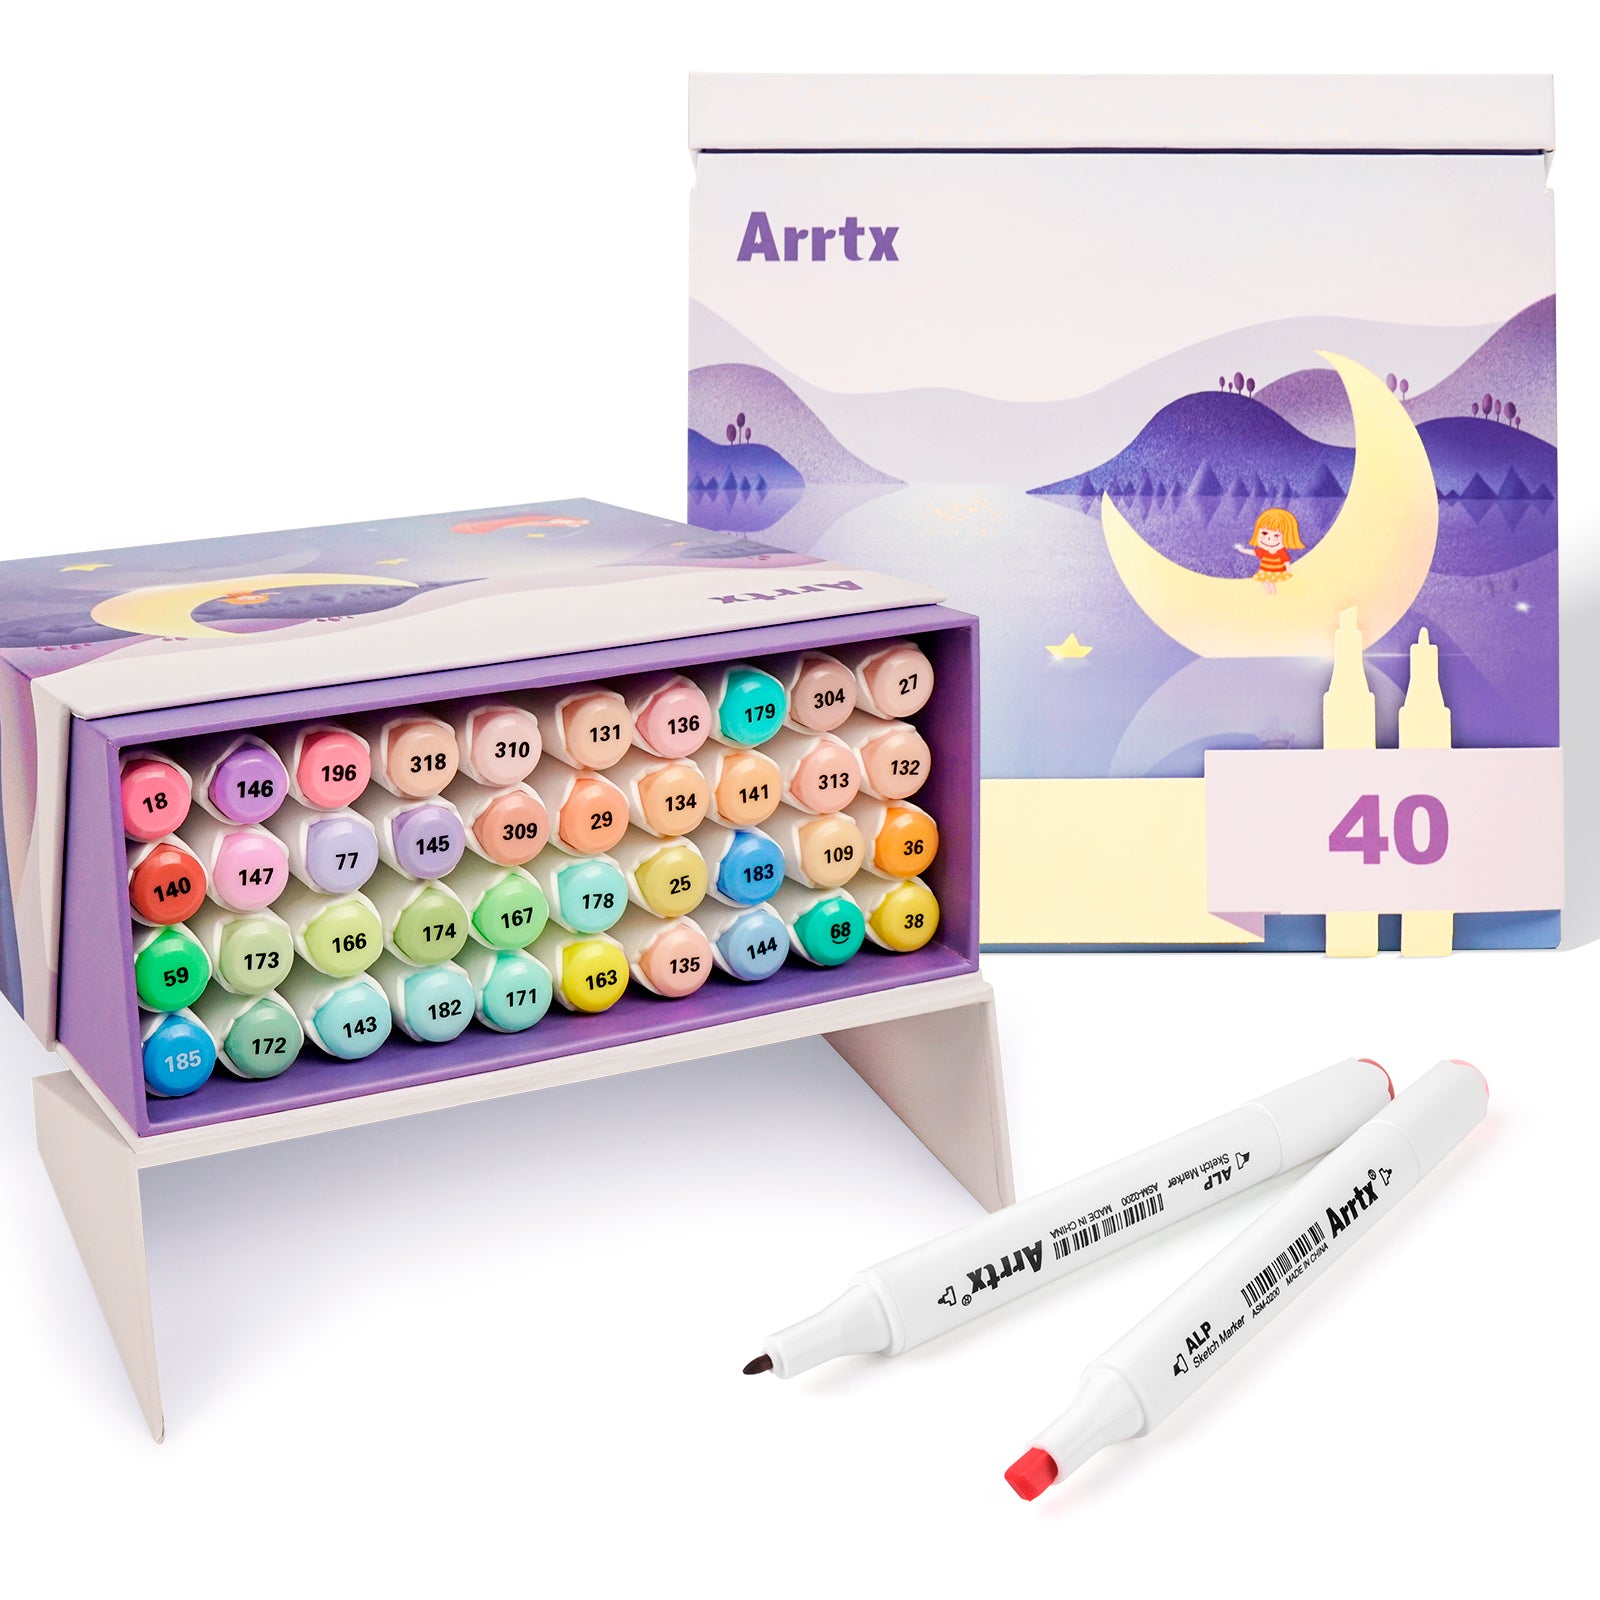 Arrtx ALP 40 Pastellfarben-Alkoholmarker-Farbstift-Set